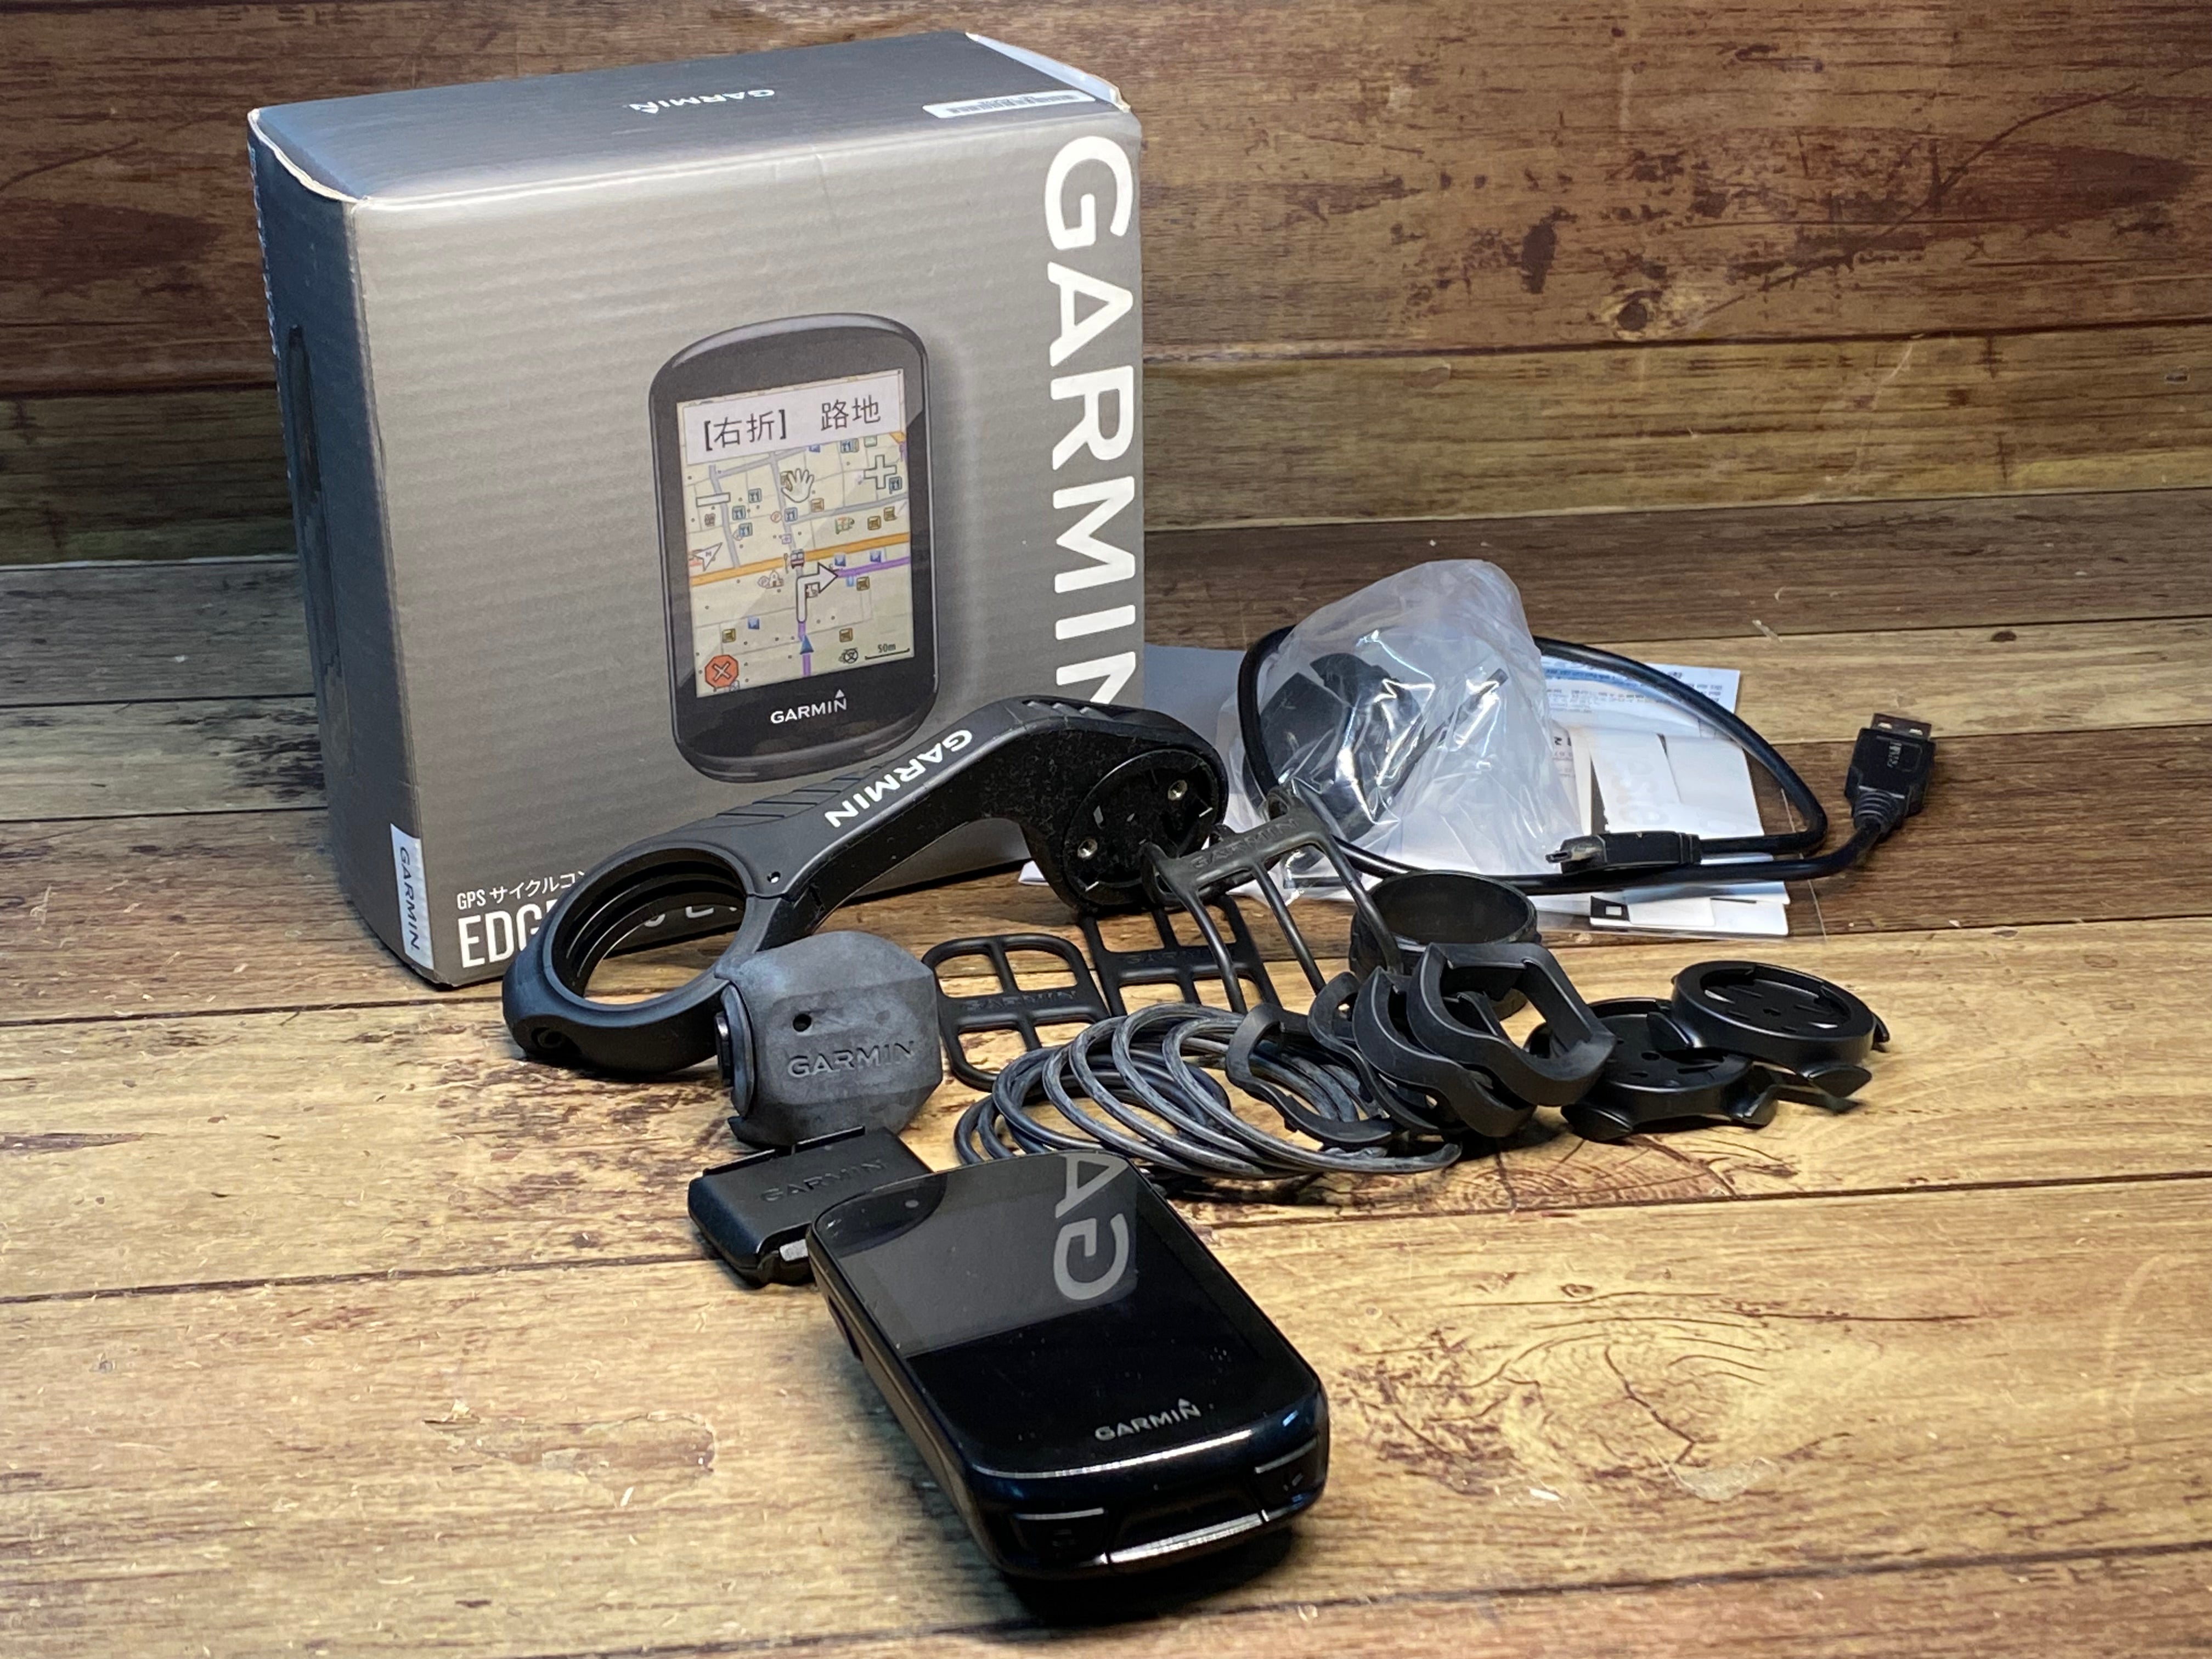 スポーツ/アウトドア新品 GARMIN ガーミン 830 エッジ GPSサイクル